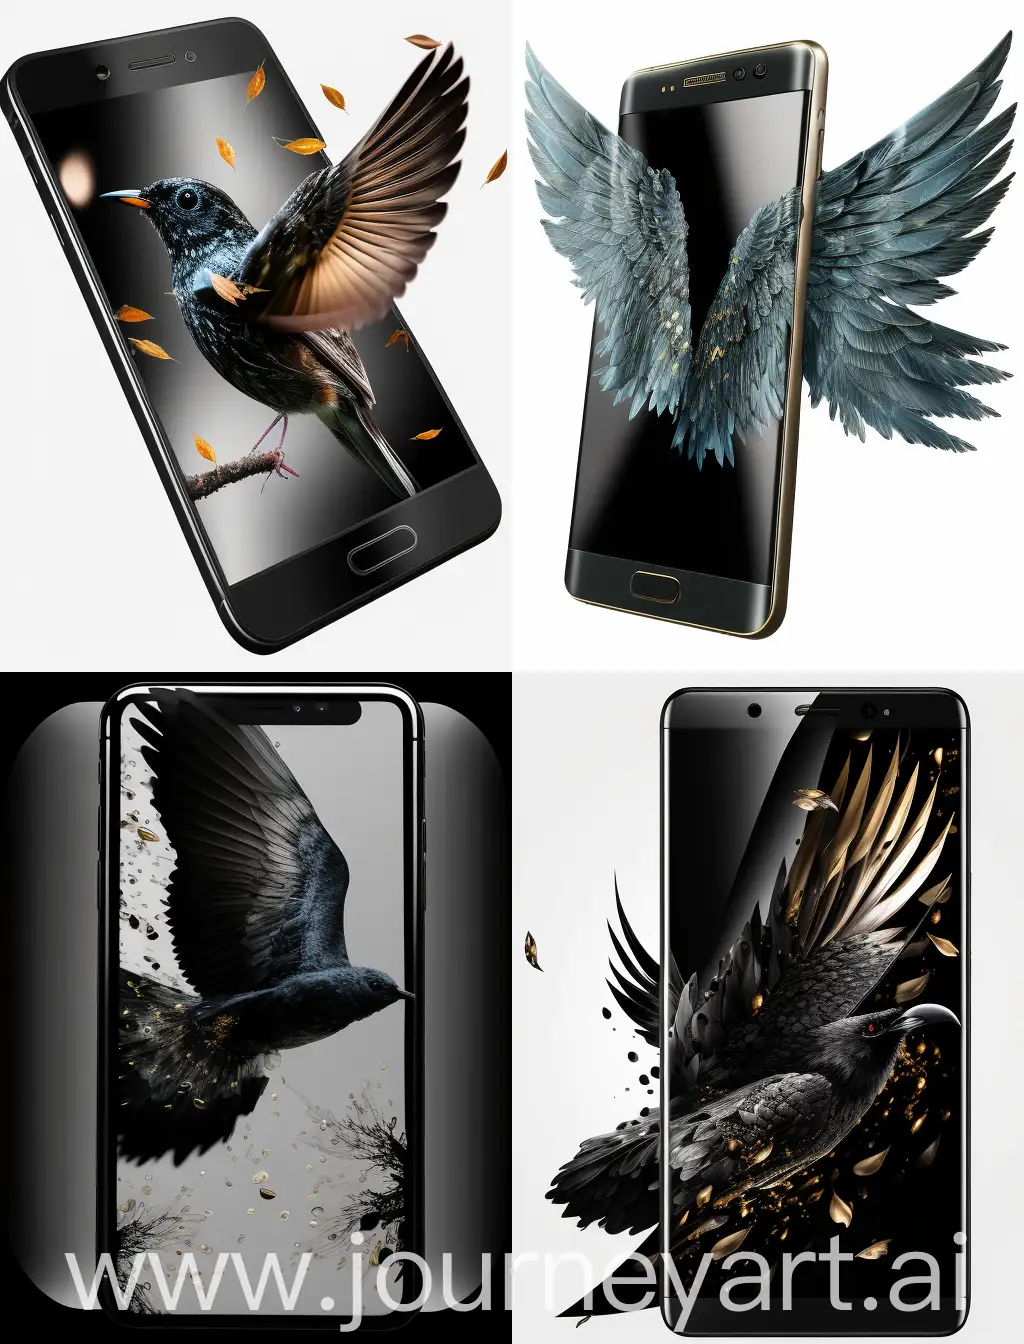 PNG-картинка с прозрачным фоном, на которой изображен смартфон черного цвета. Он должен находиться как бы в полете и блестеть. Изображение должно быть продающим, то есть очень привлекательным